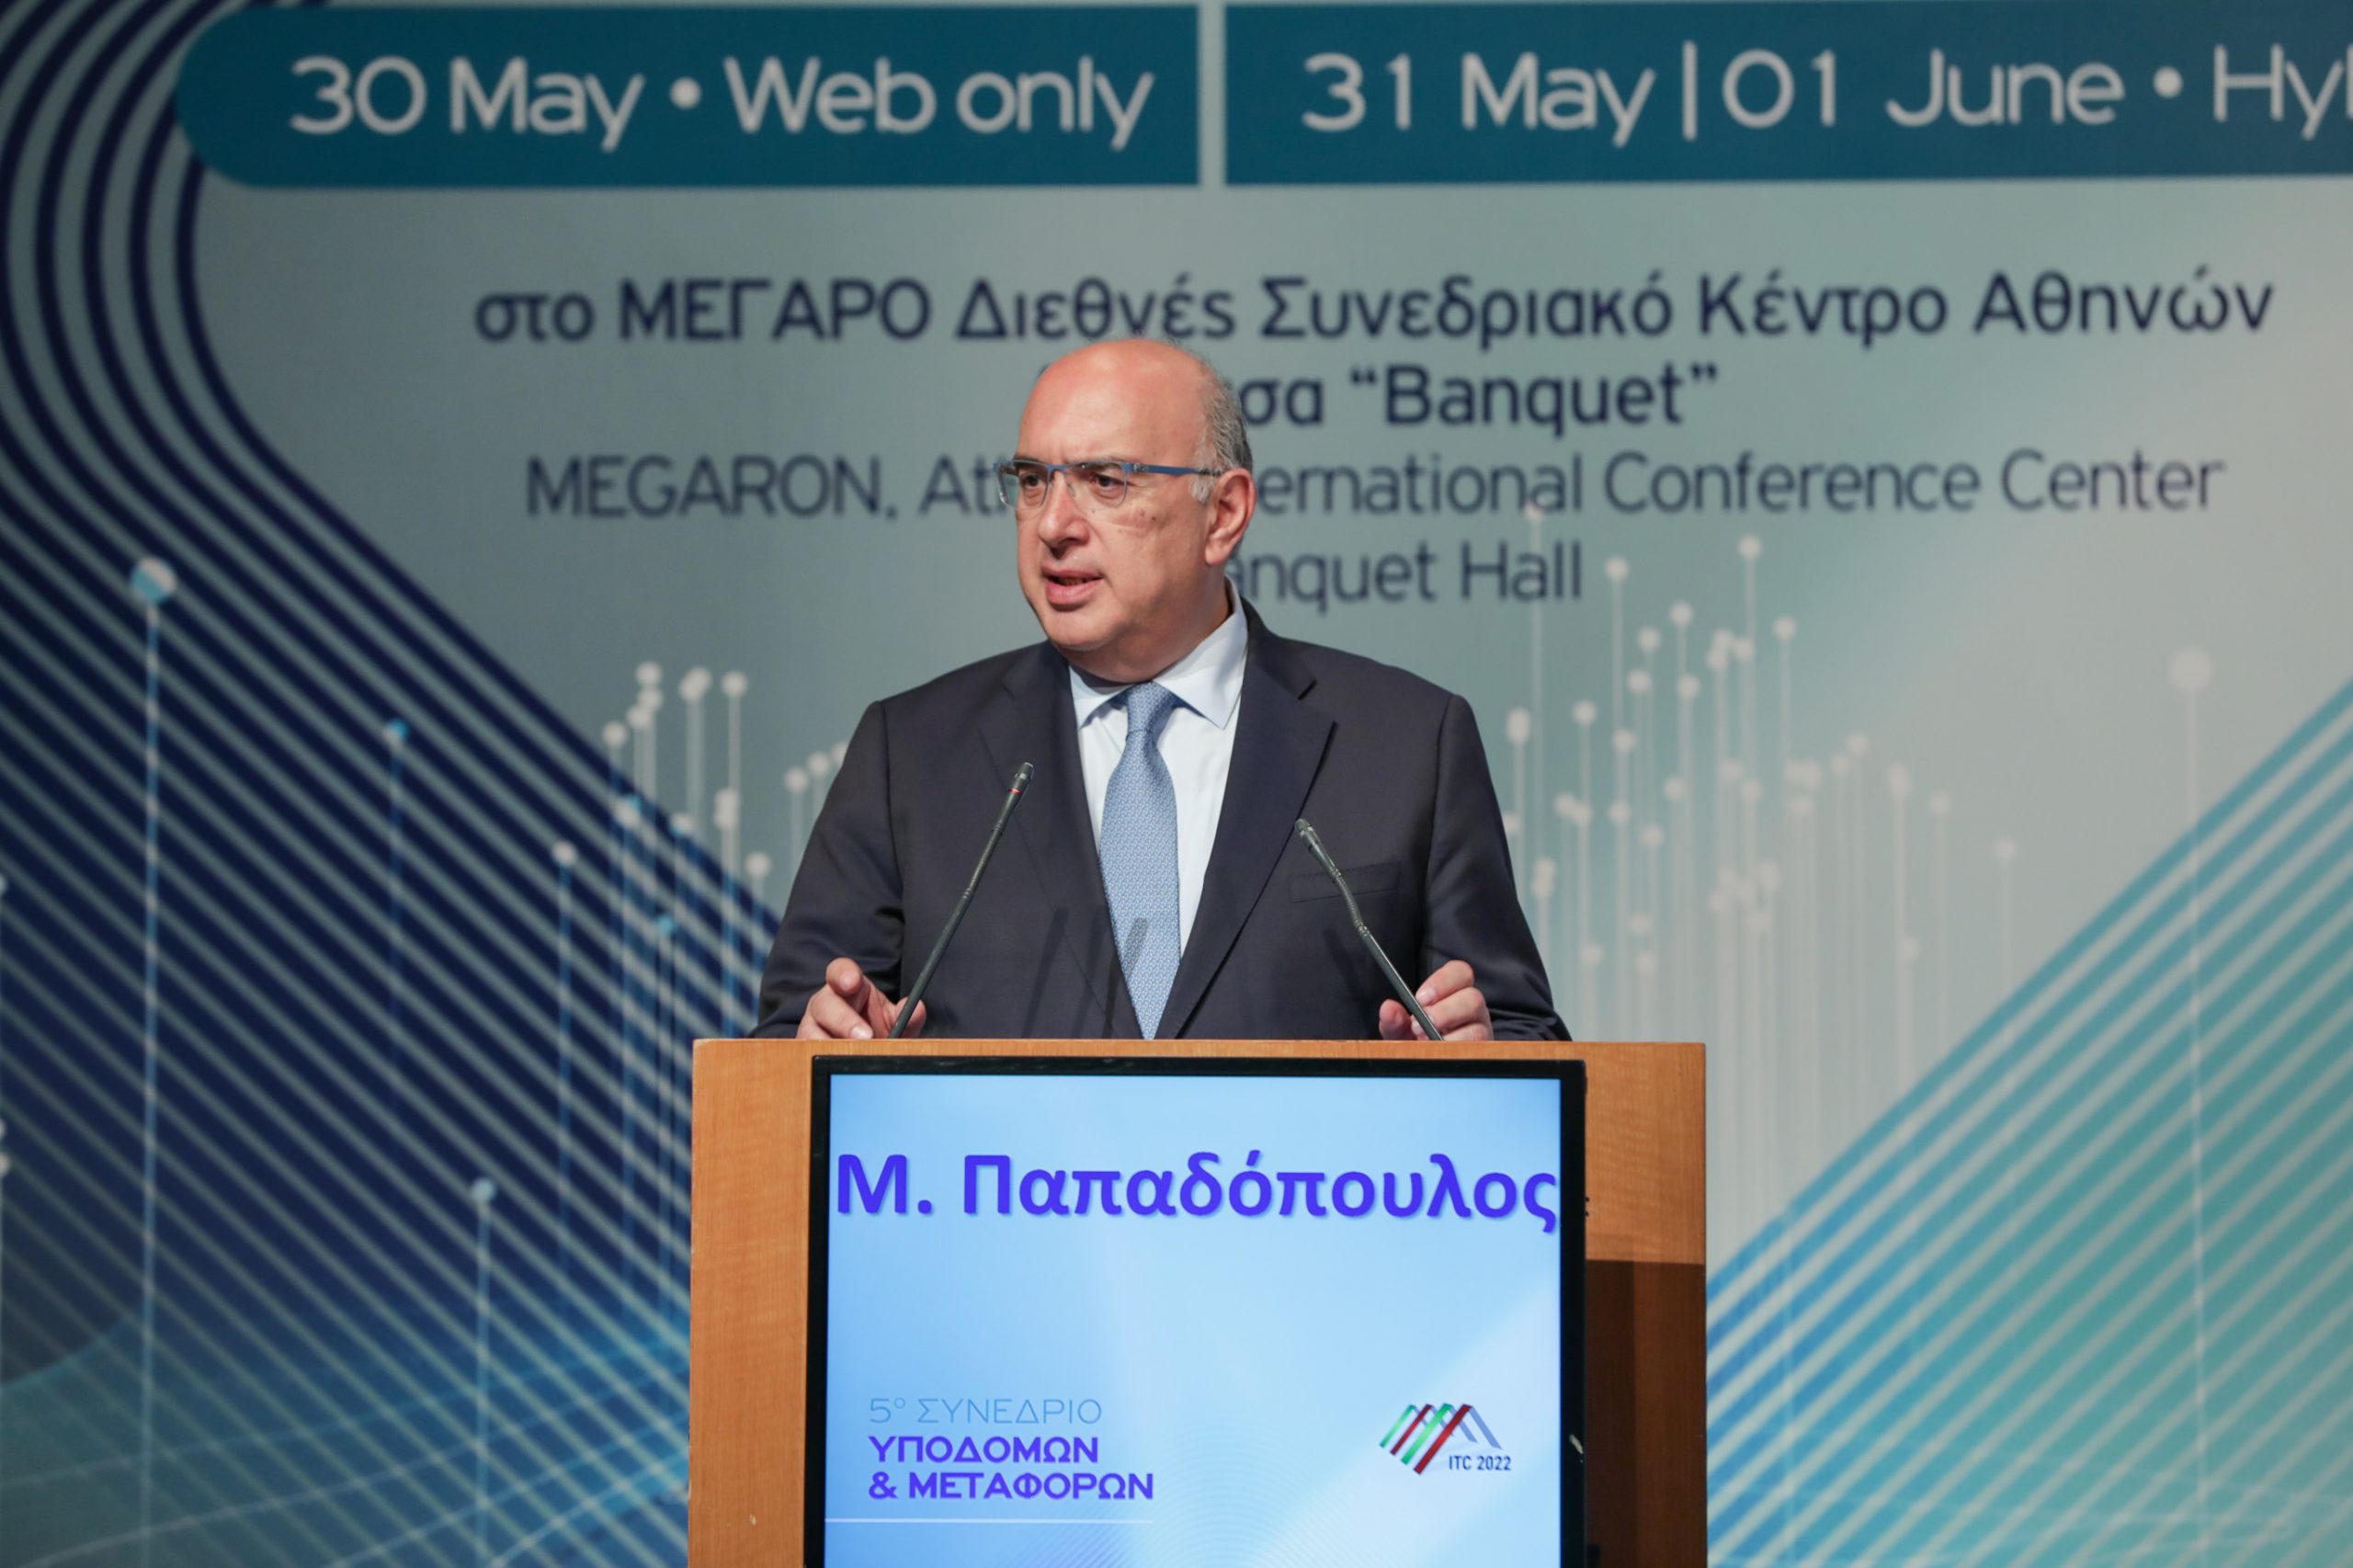 Μιχάλης Παπαδόπουλος: Διεθνής ψηφιακός κόμβος η Ελλάδα, σε υπηρεσίες μεταφορών και εφοδιαστική αλυσίδα